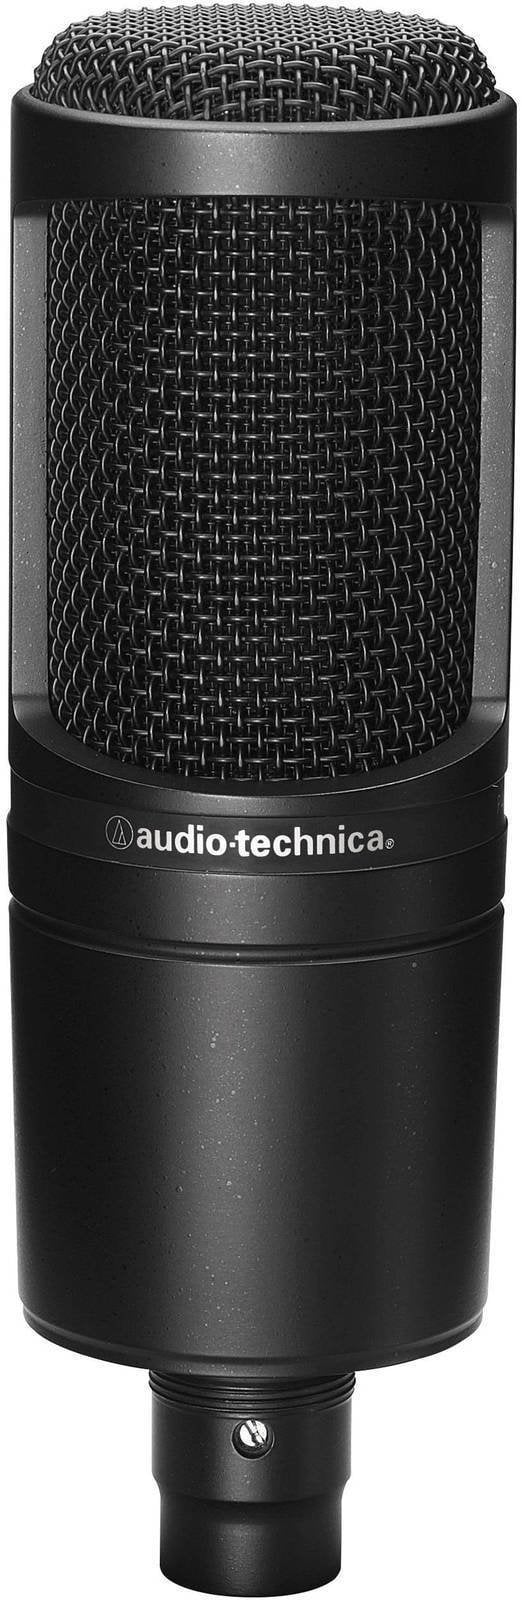 Condensatormicrofoon voor studio Audio-Technica AT2020 Condensatormicrofoon voor studio